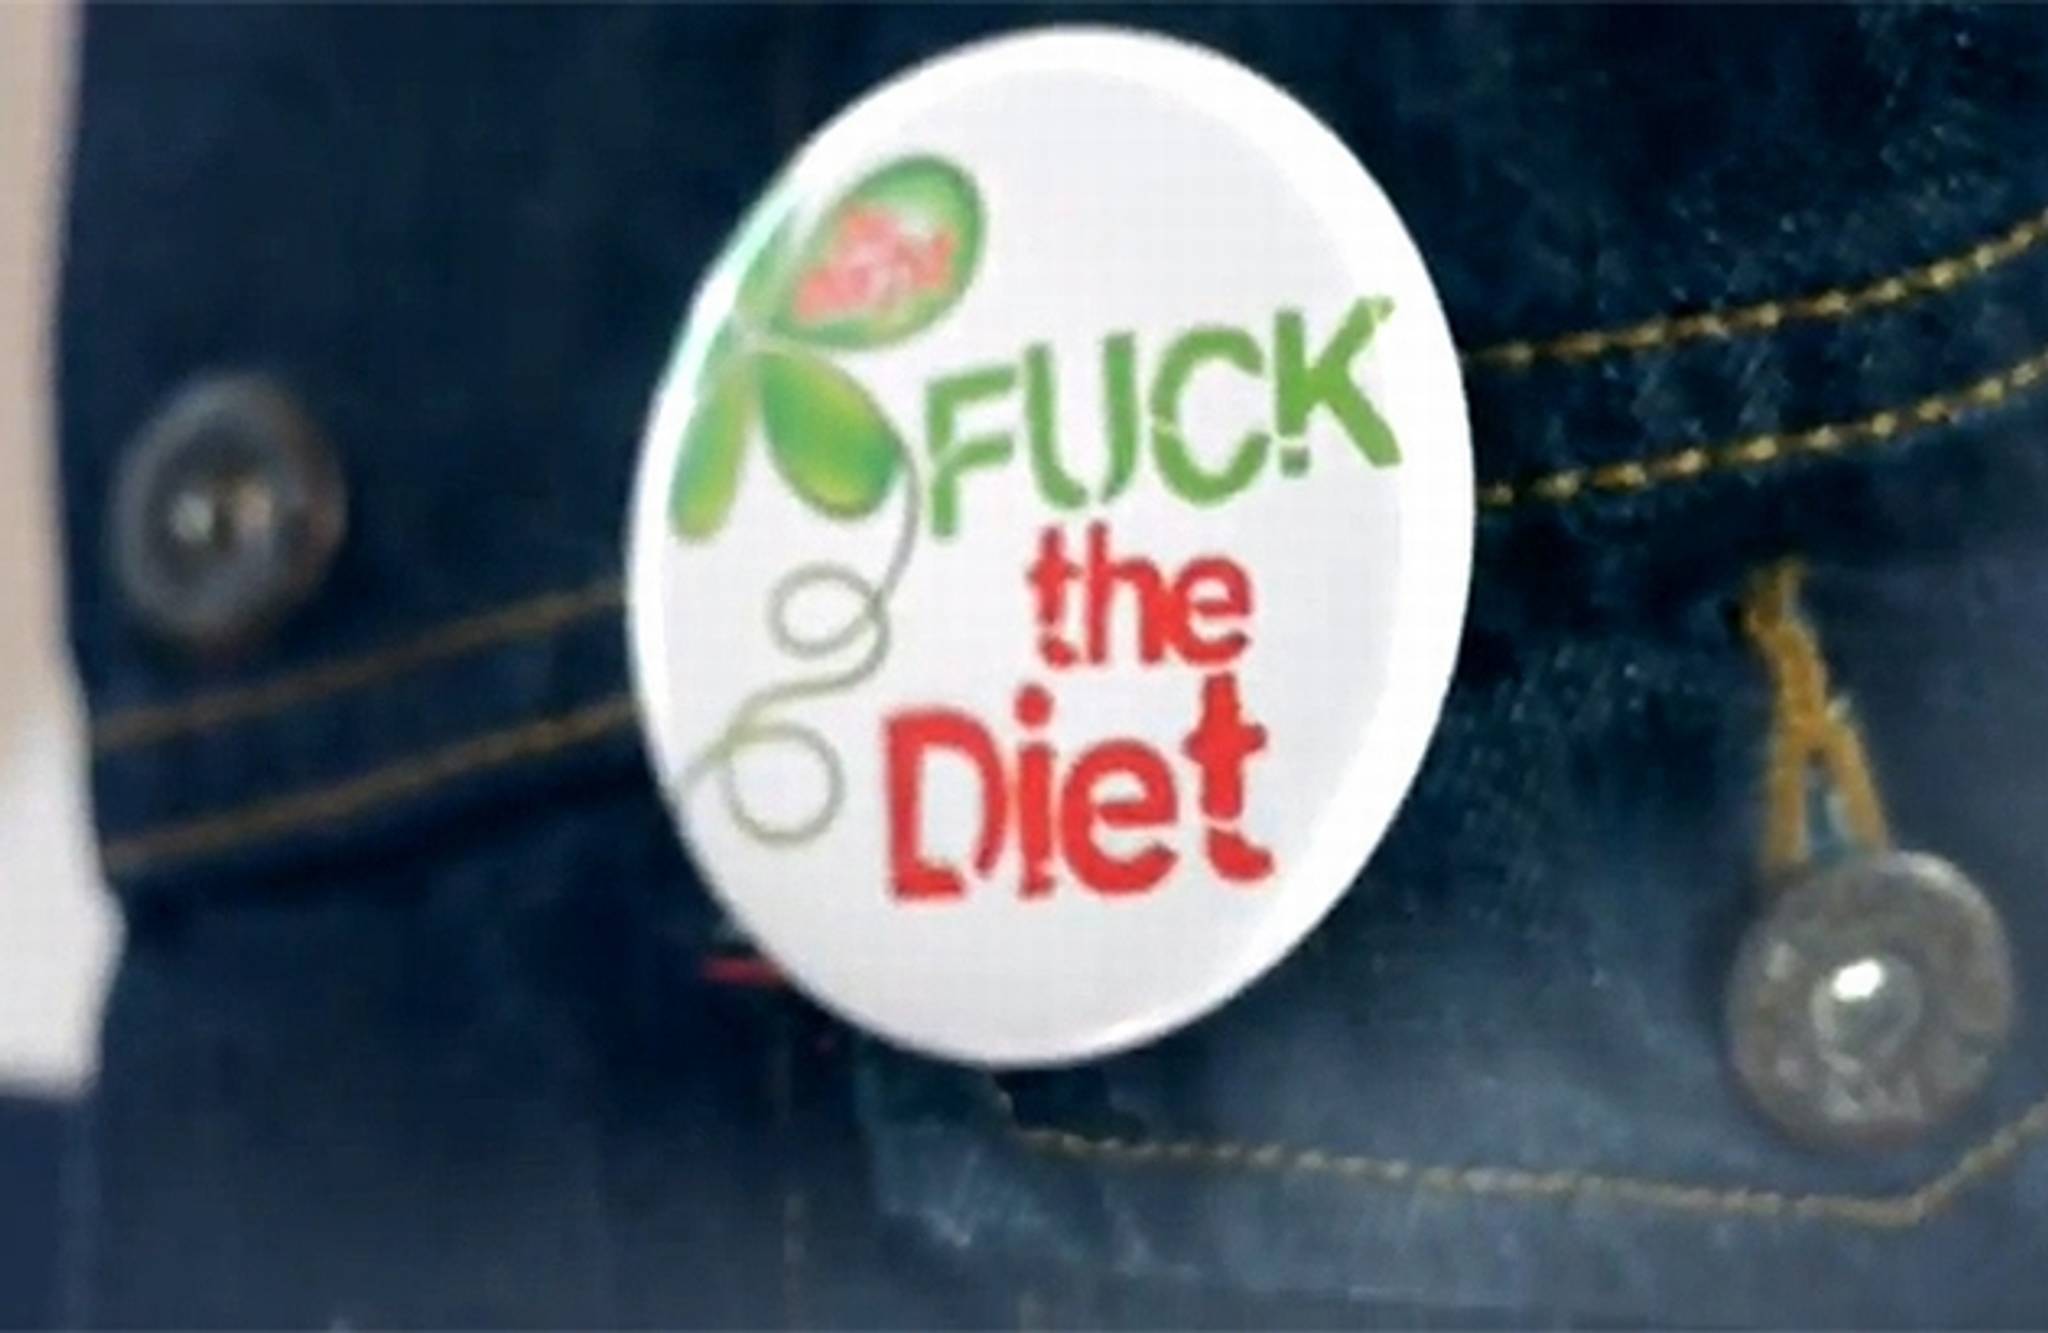 Du darfst: Fuck the Diet!